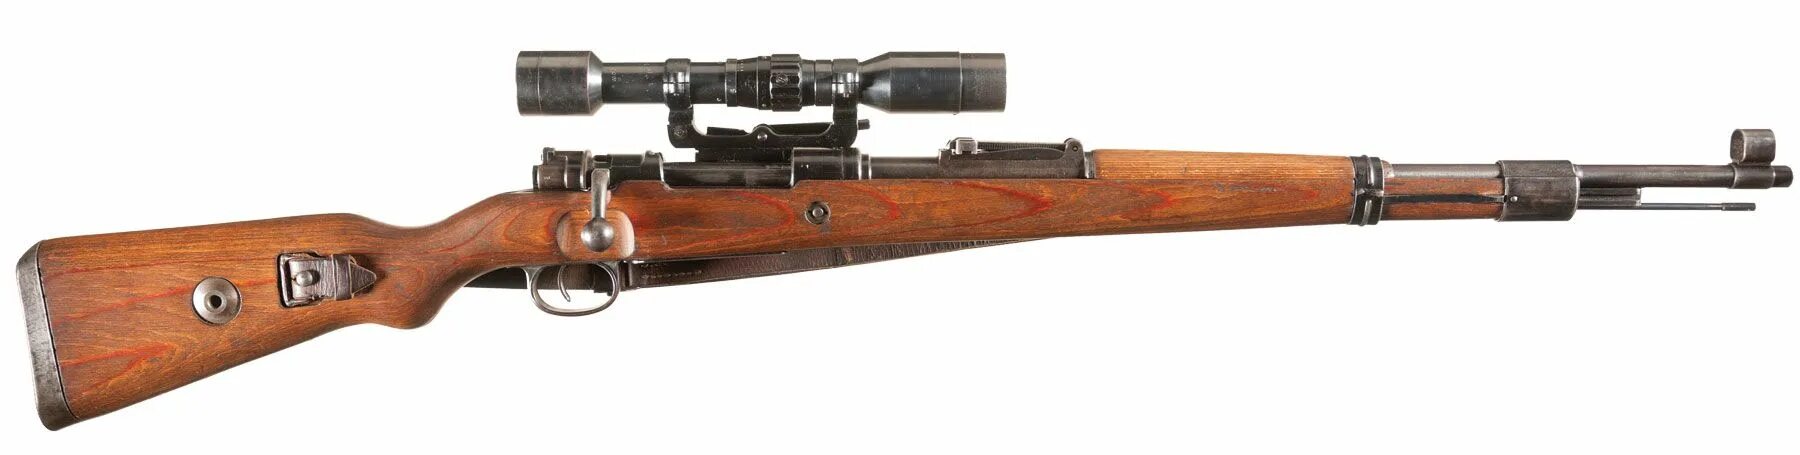 Винтовка Mauser 98k. Винтовка Маузер к-98. Карабин Mauser 98k. Немецкая винтовка Mauser 98k. Купить б 98